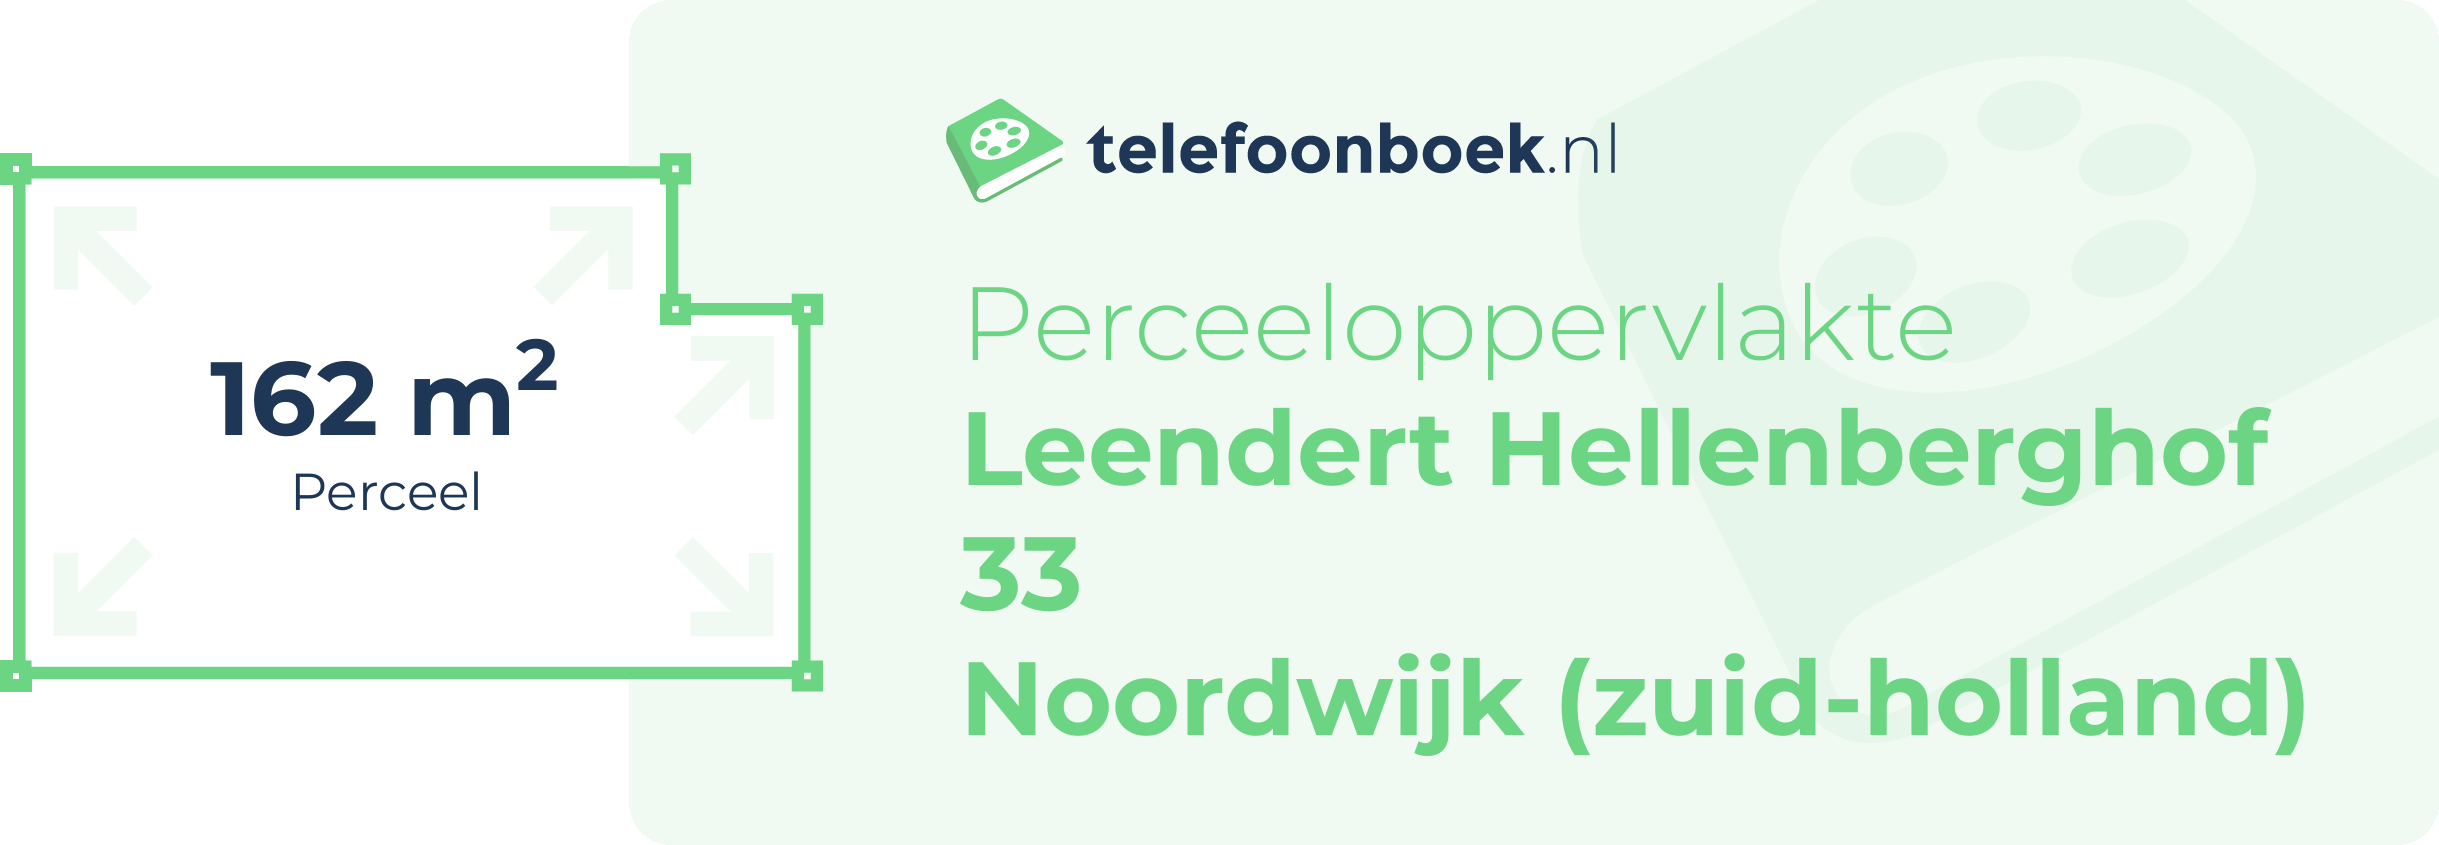 Perceeloppervlakte Leendert Hellenberghof 33 Noordwijk (Zuid-Holland)